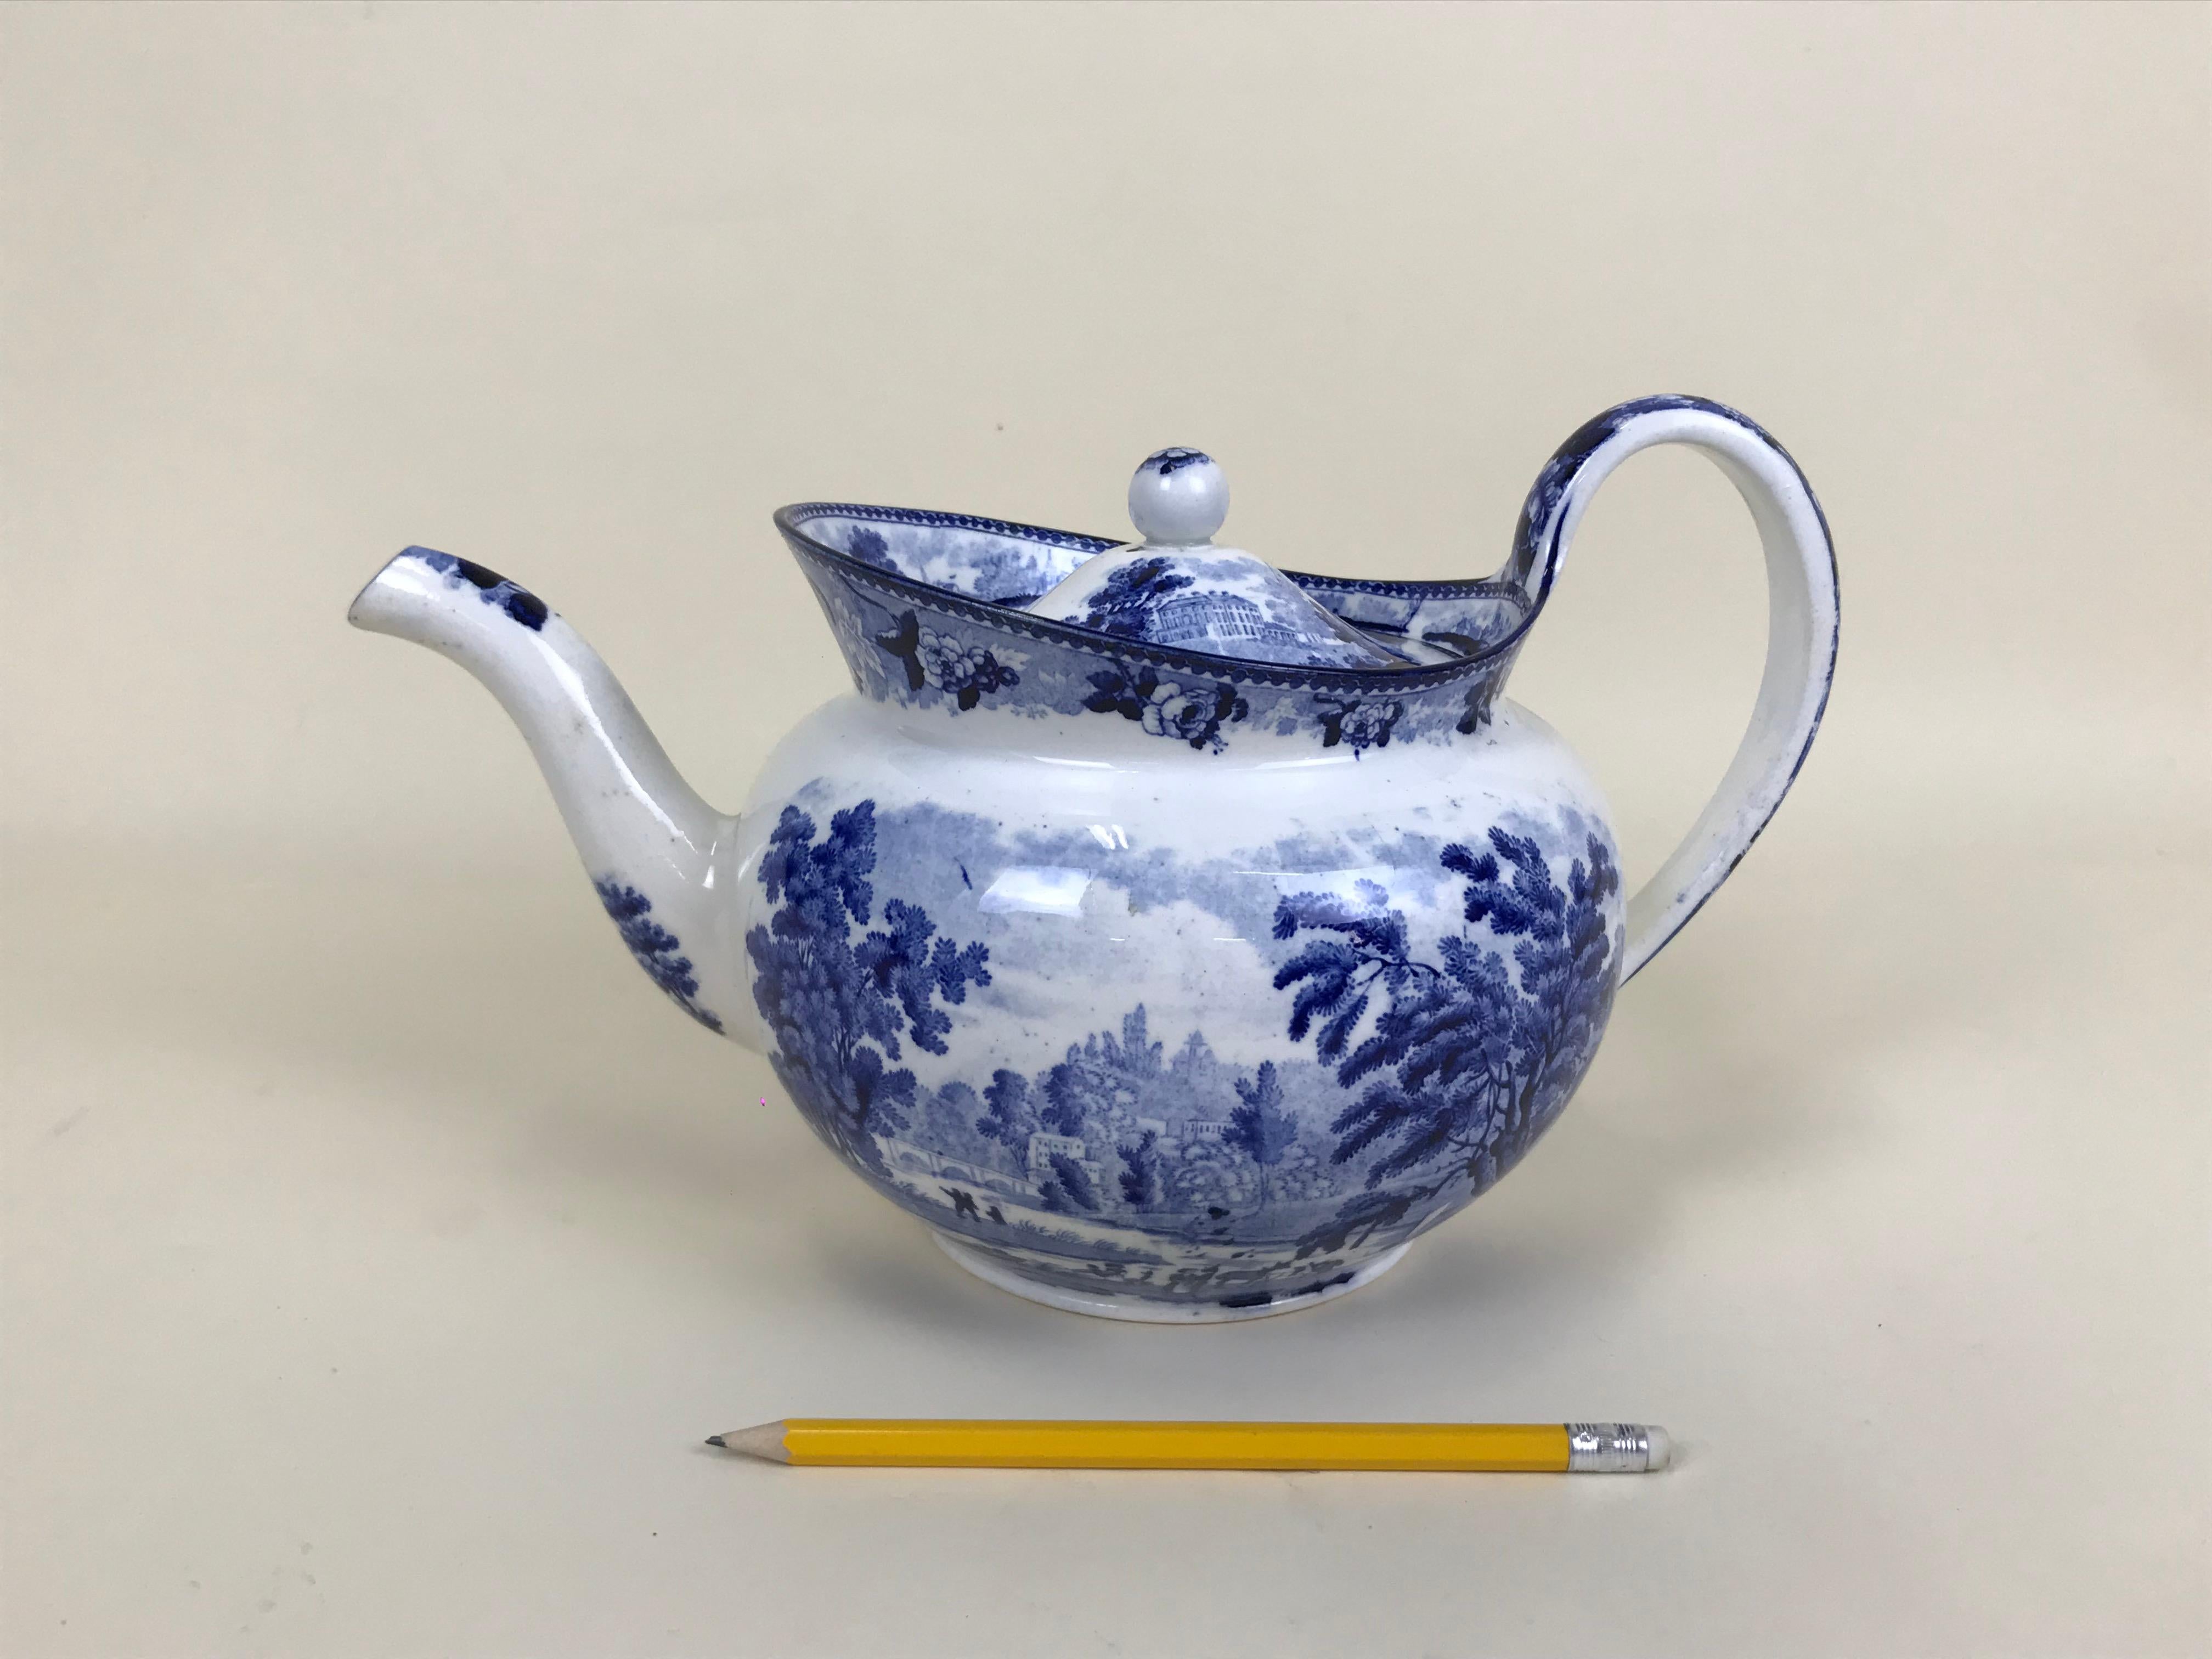 earthenware teapot